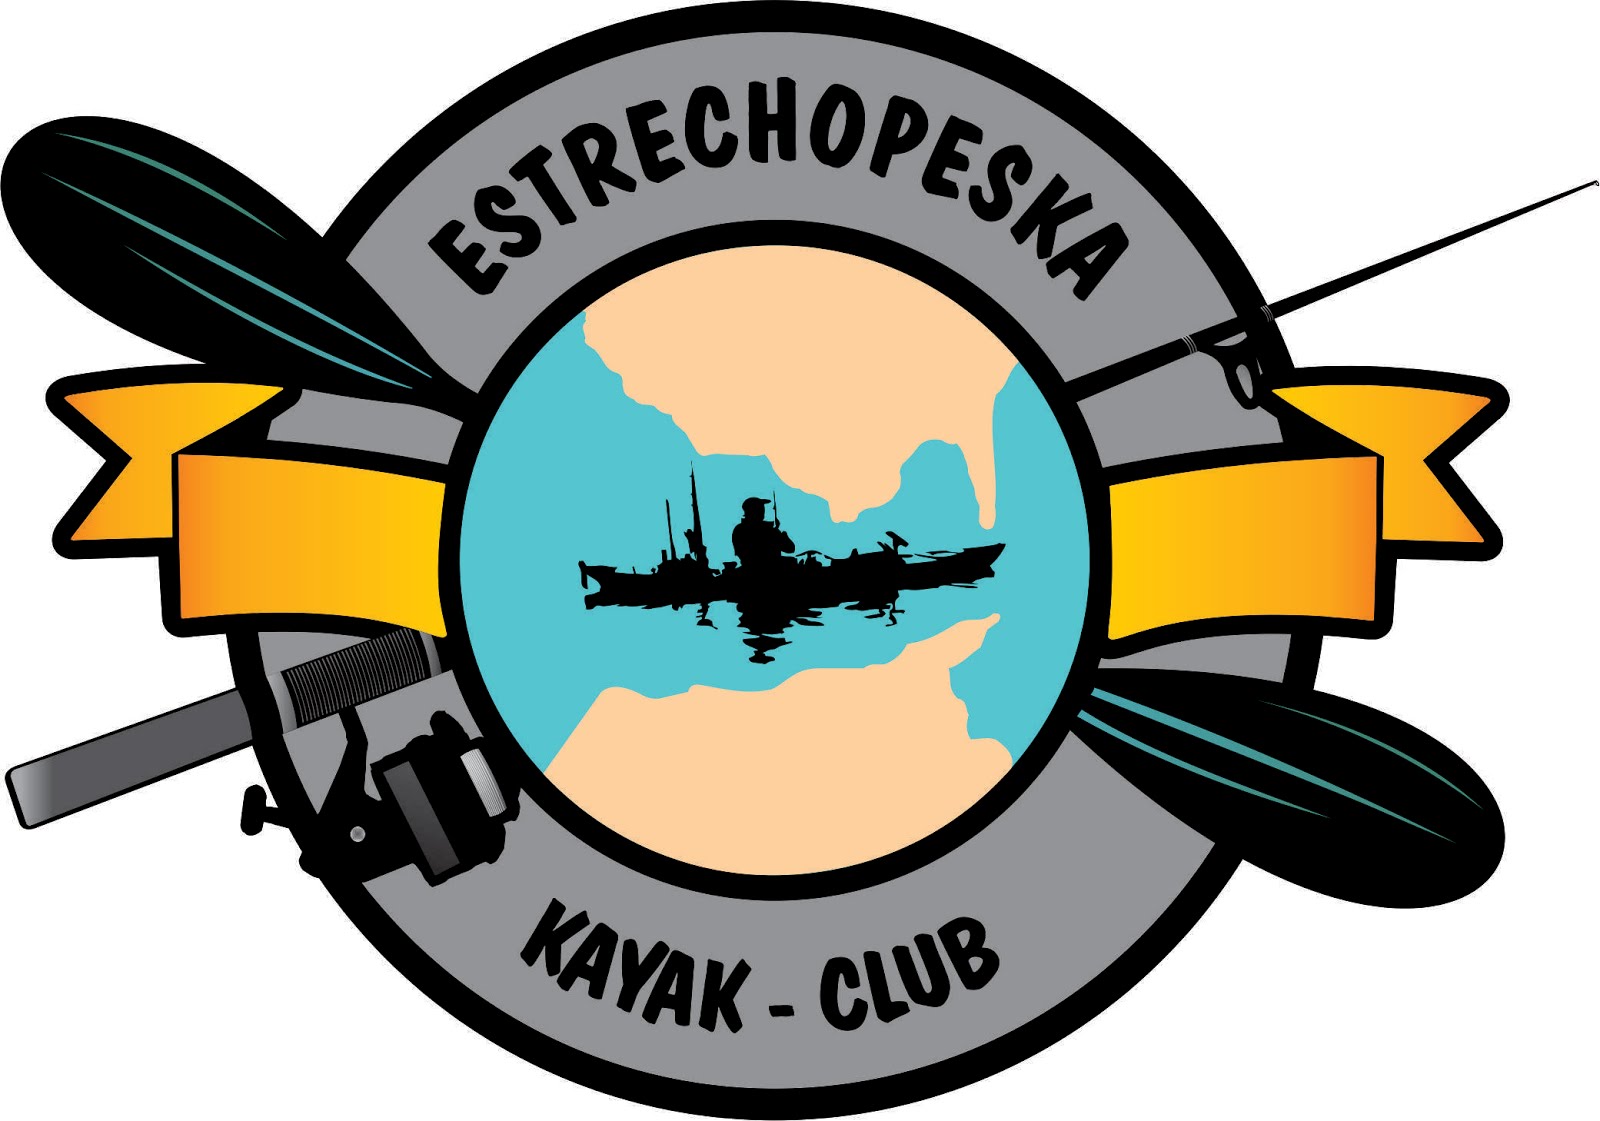 CLUB ESTRECHOPESKA